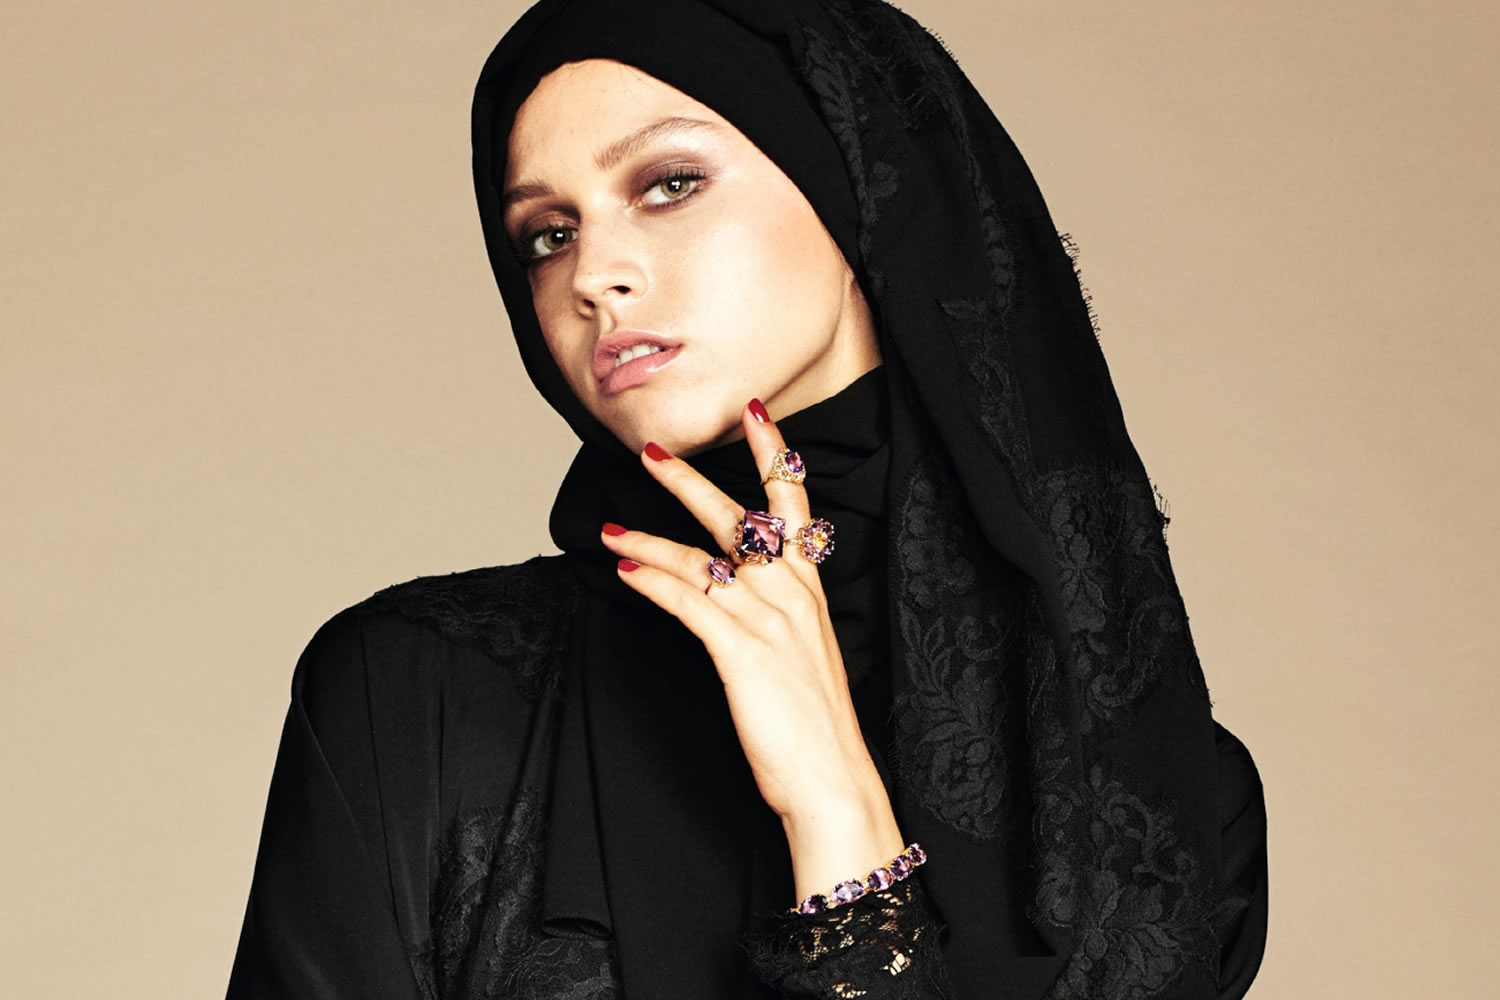 Dolce & Gabbana respeta la sharia en su nueva colección para mujeres musulmanas